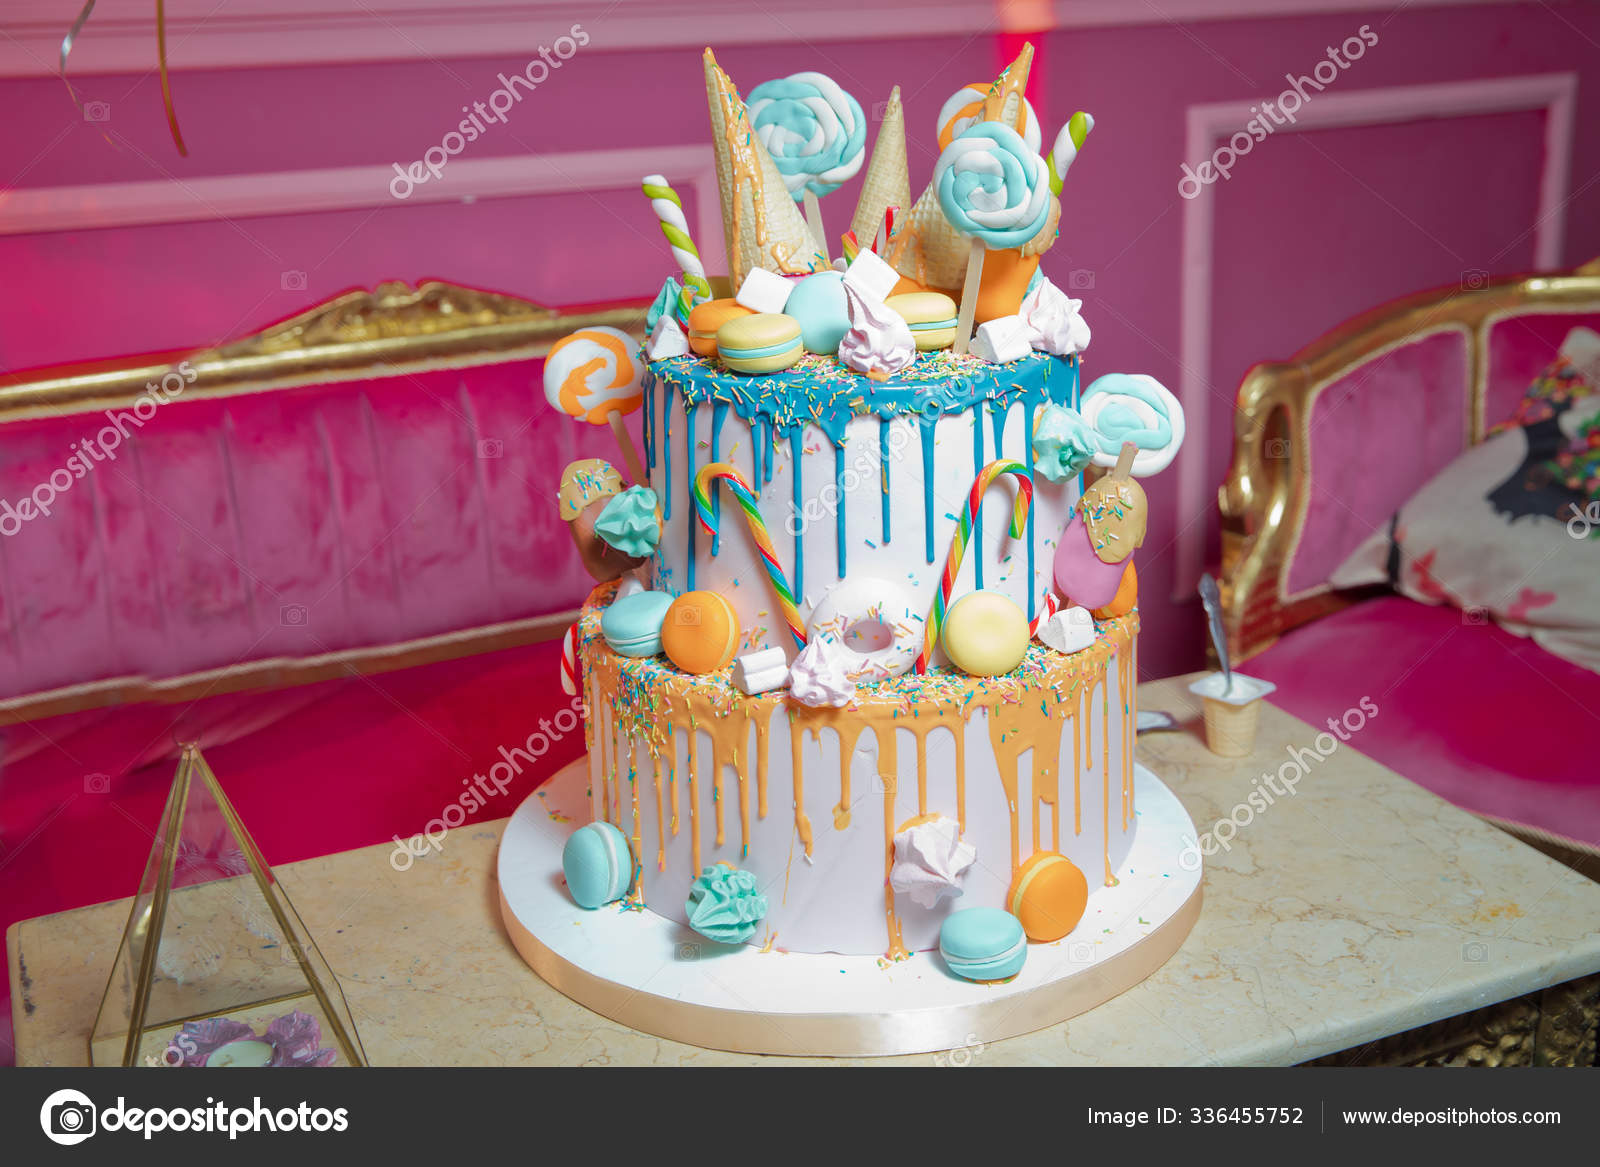 Gâteau bleu avec une petite boule sucrée colorée. décoration pour